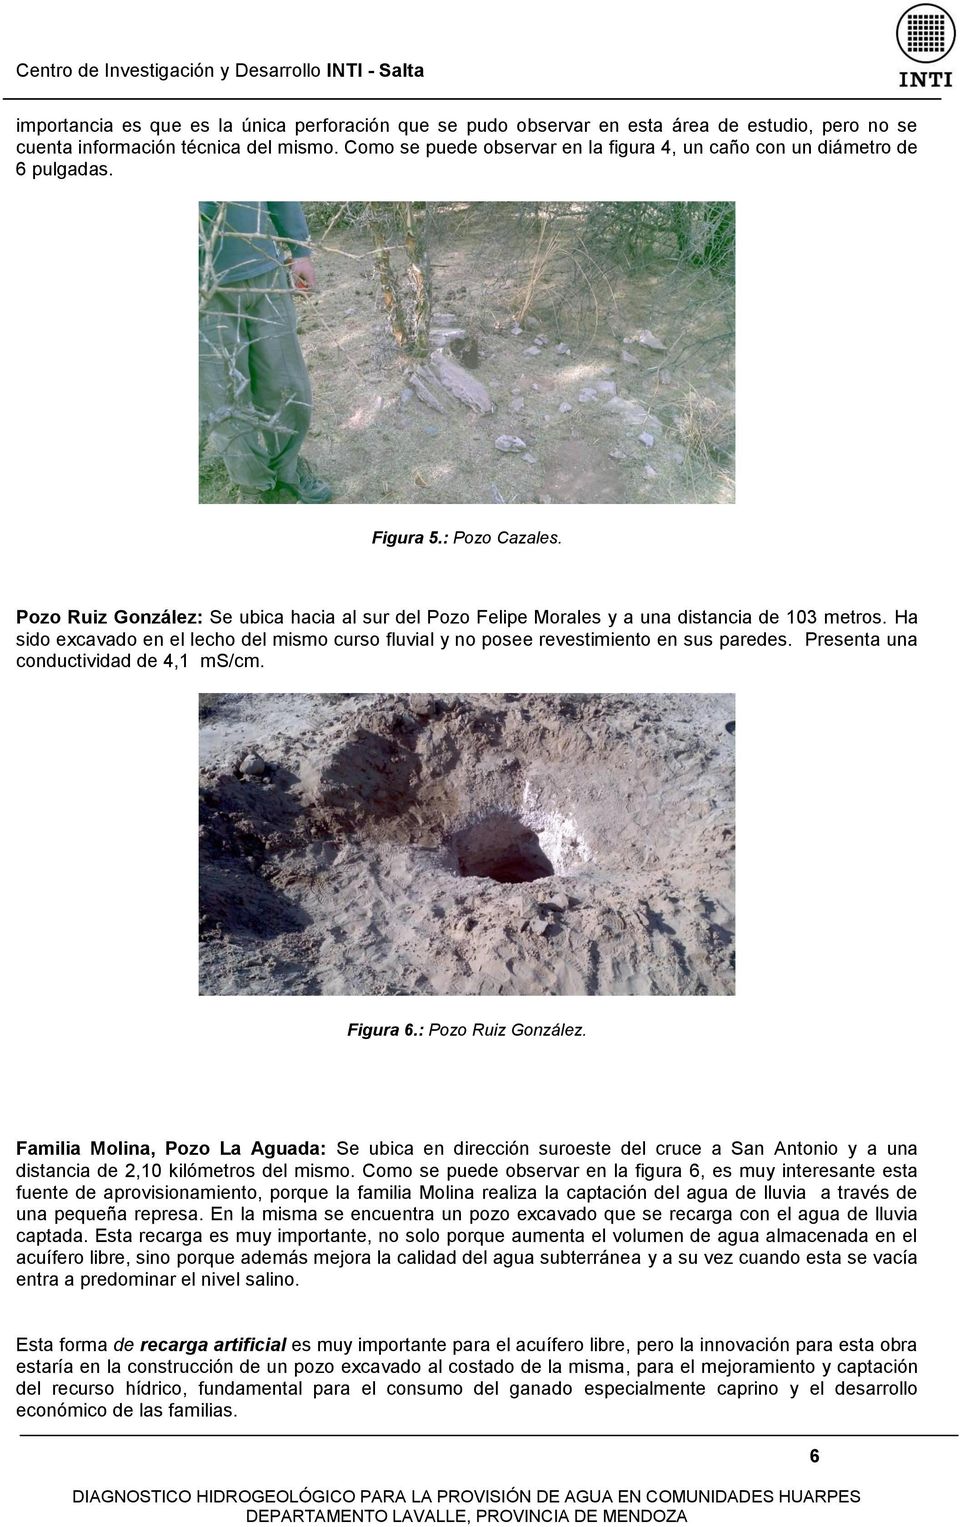 Pozo Ruiz González: Se ubica hacia al sur del Pozo Felipe Morales y a una distancia de 103 metros. Ha sido excavado en el lecho del mismo curso fluvial y no posee revestimiento en sus paredes.